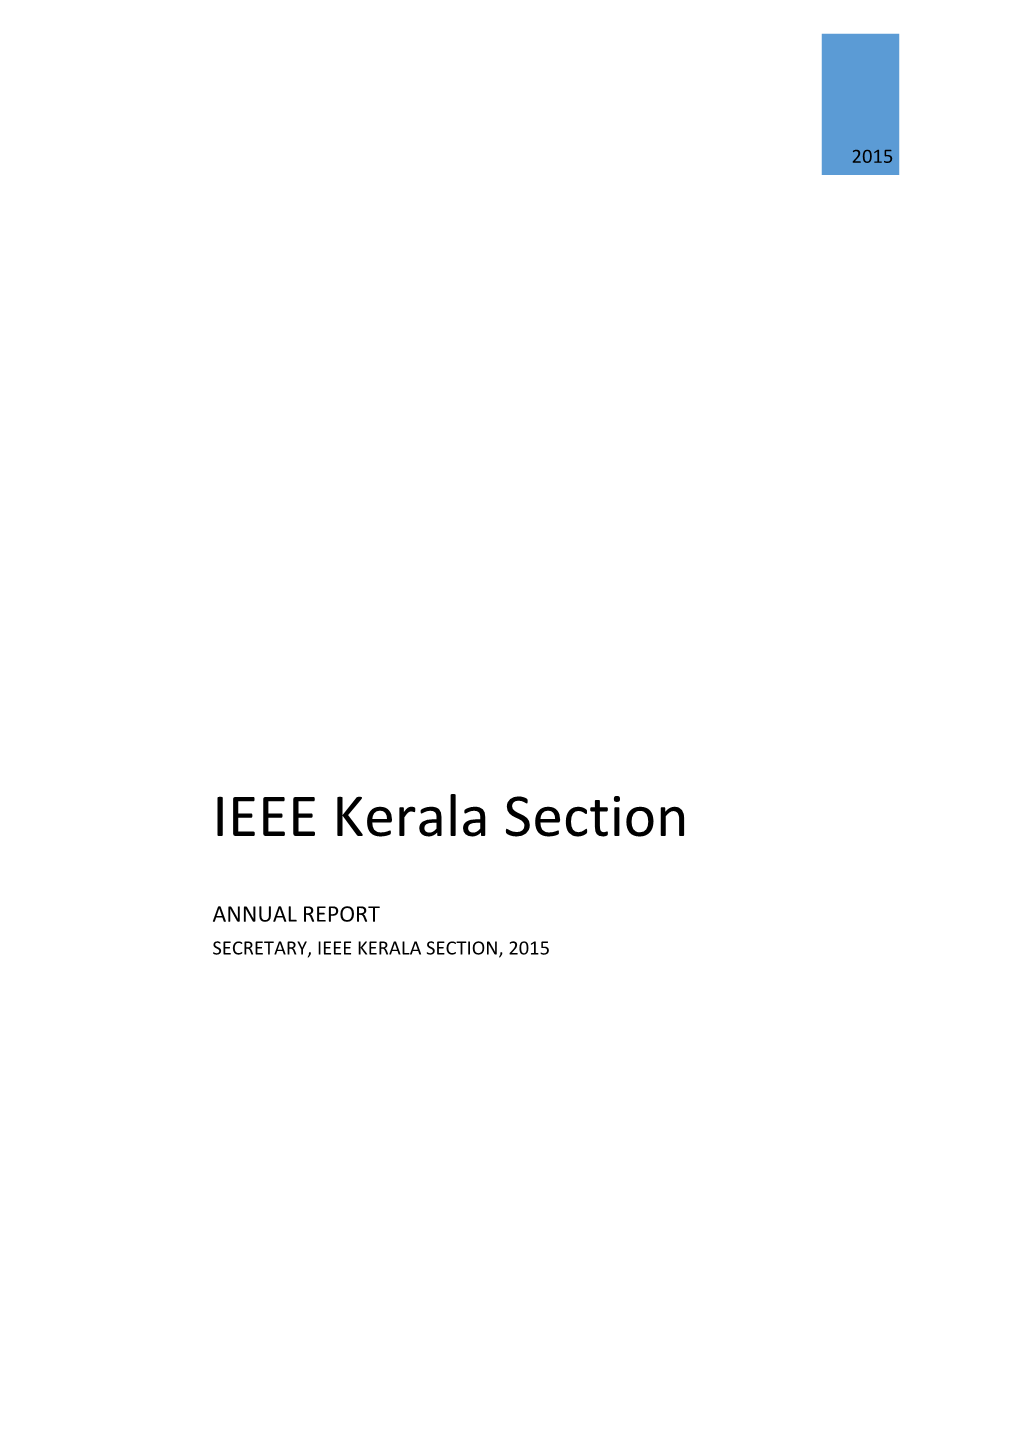 Kerala Section